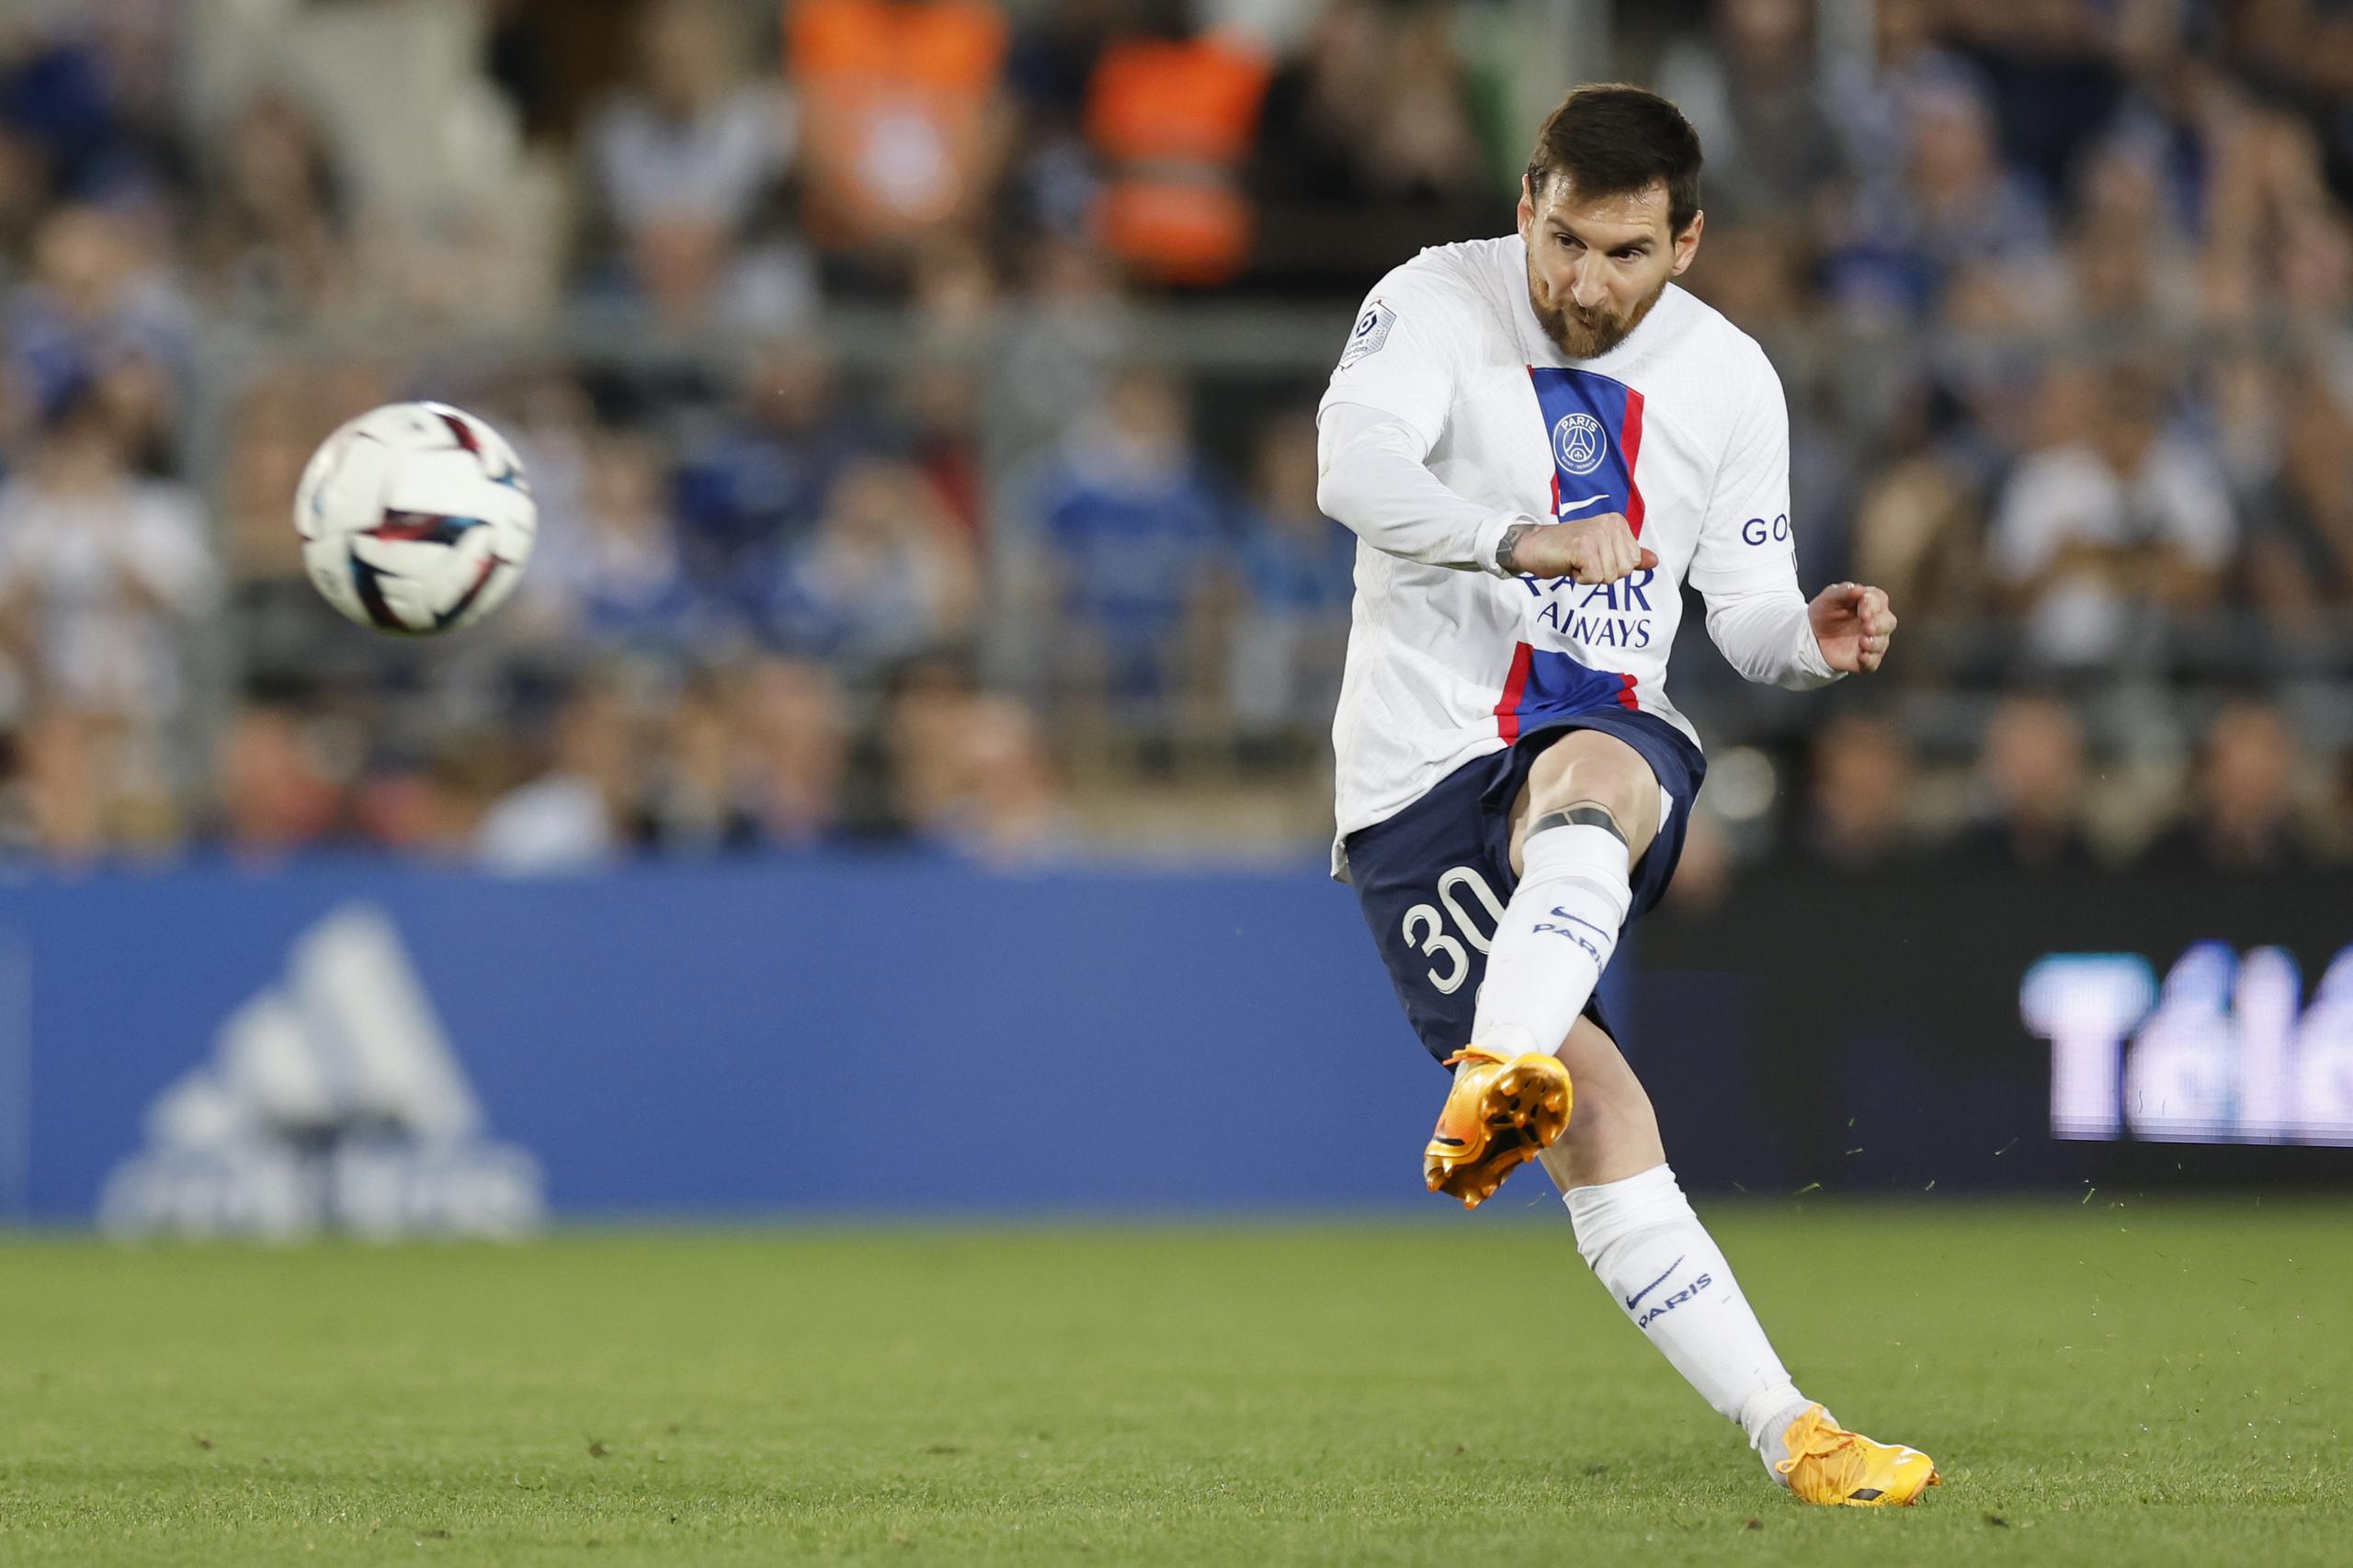 Lionel Messi del Paris Saint-Germain patea el balón en el empate 1-1 ante Estrasburgo en la liga francesa, el sábado 27 de mayo de 2023. (AP Foto/Jean-Francois Badias)